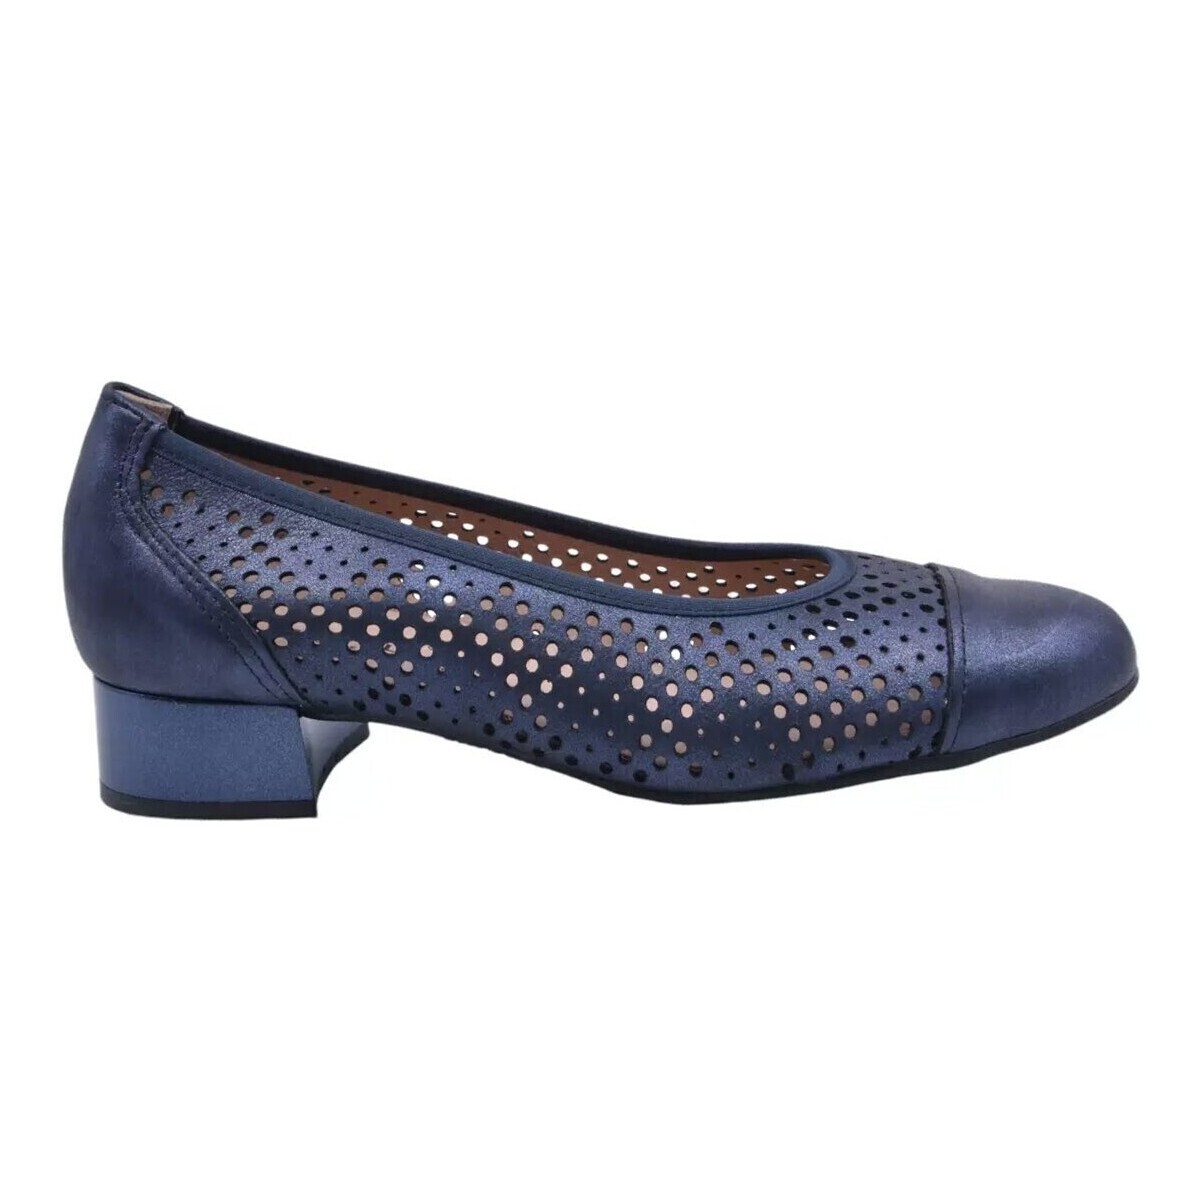 Sapatos Mulher Calçado de segurança Pitillos ZAPATO DE SALON CON PERFORACIONES  5713 MARINO Marinho